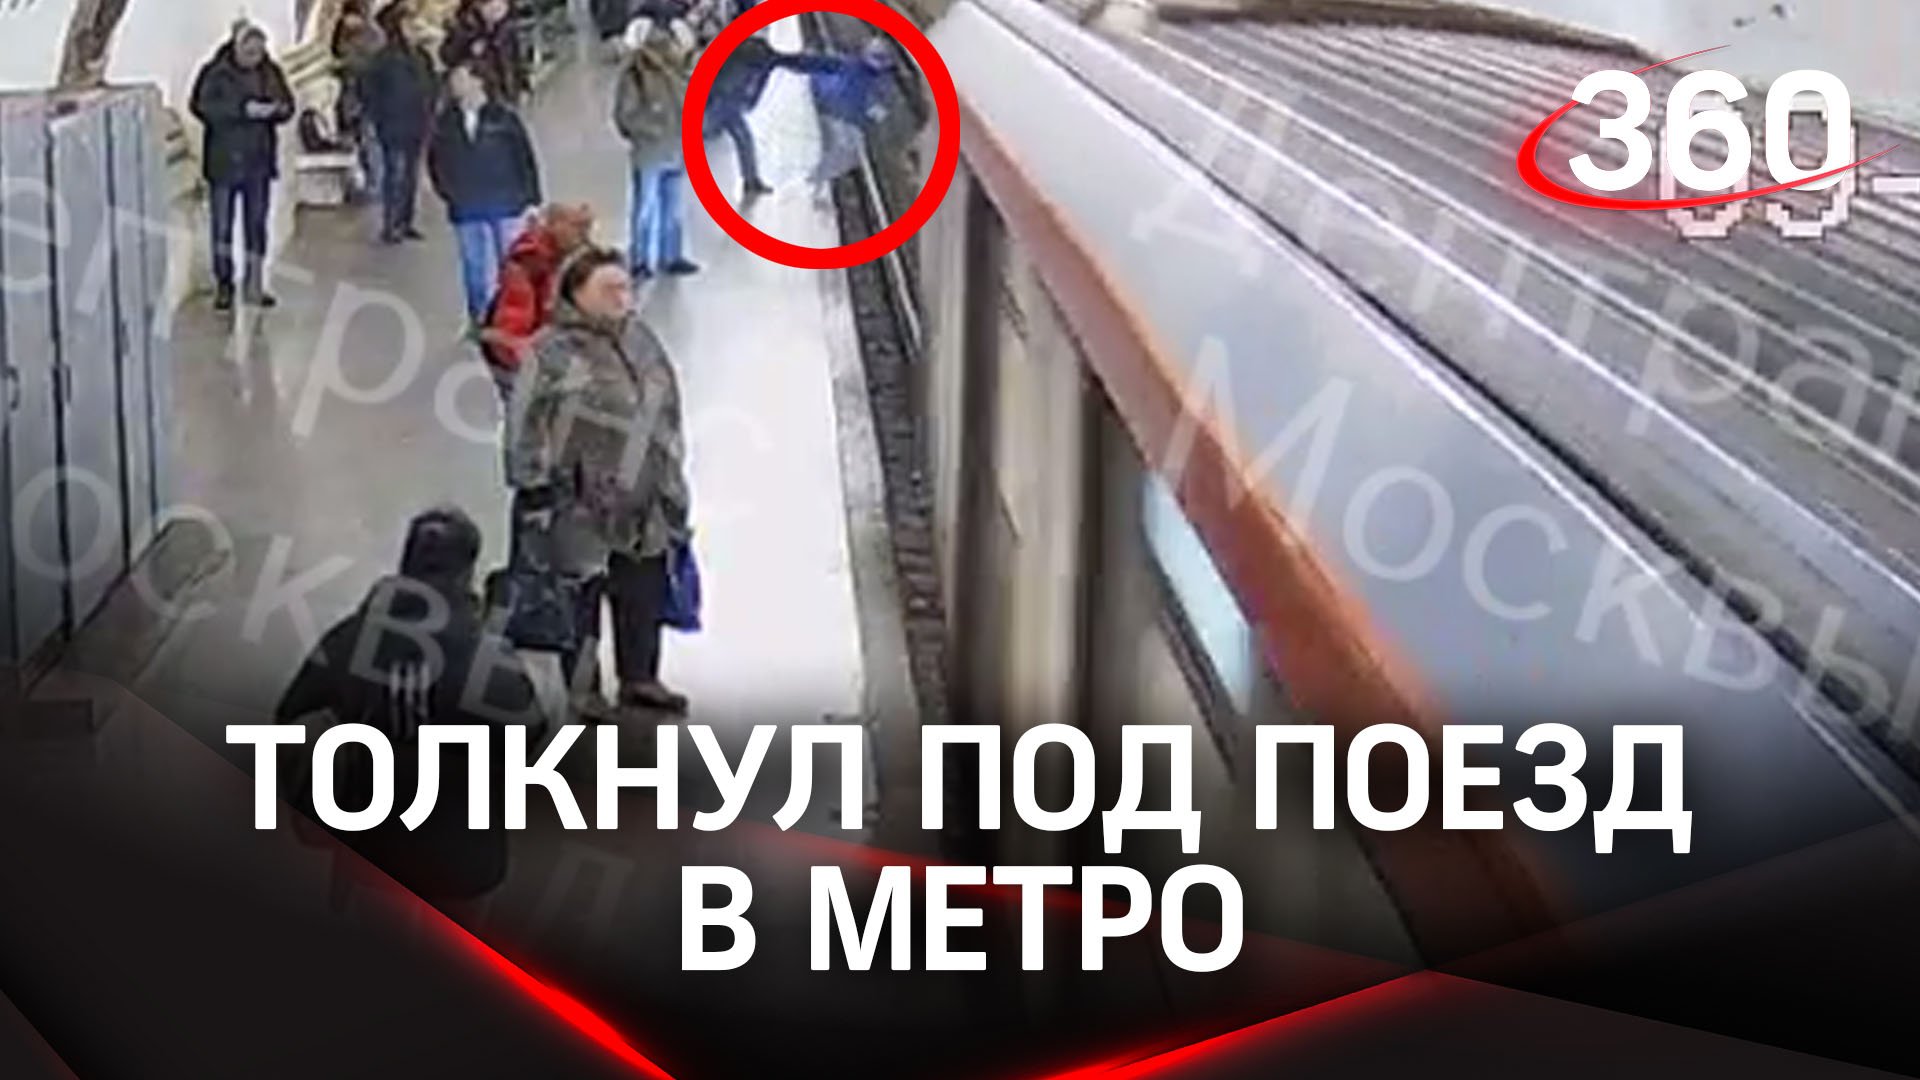 Мужчина толкнул под поезд. Столкнул под поезд в метро. Подростка столкнули под поезд. Толкнул на рельсы в метро. Поезд Путина.